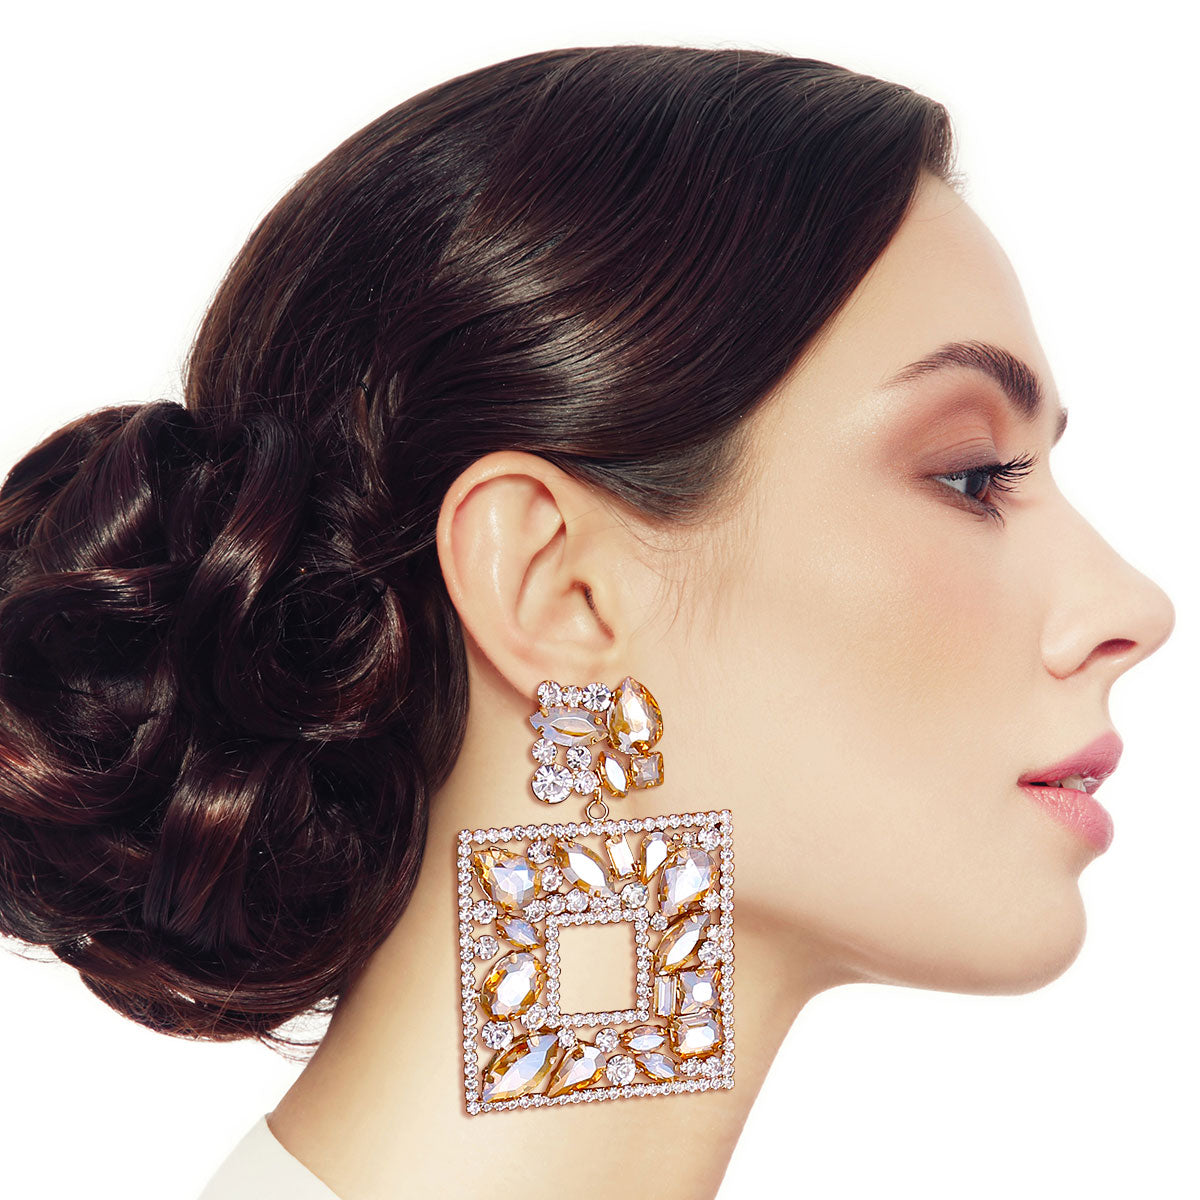 Elegant Topaz Crystal Square Earrings